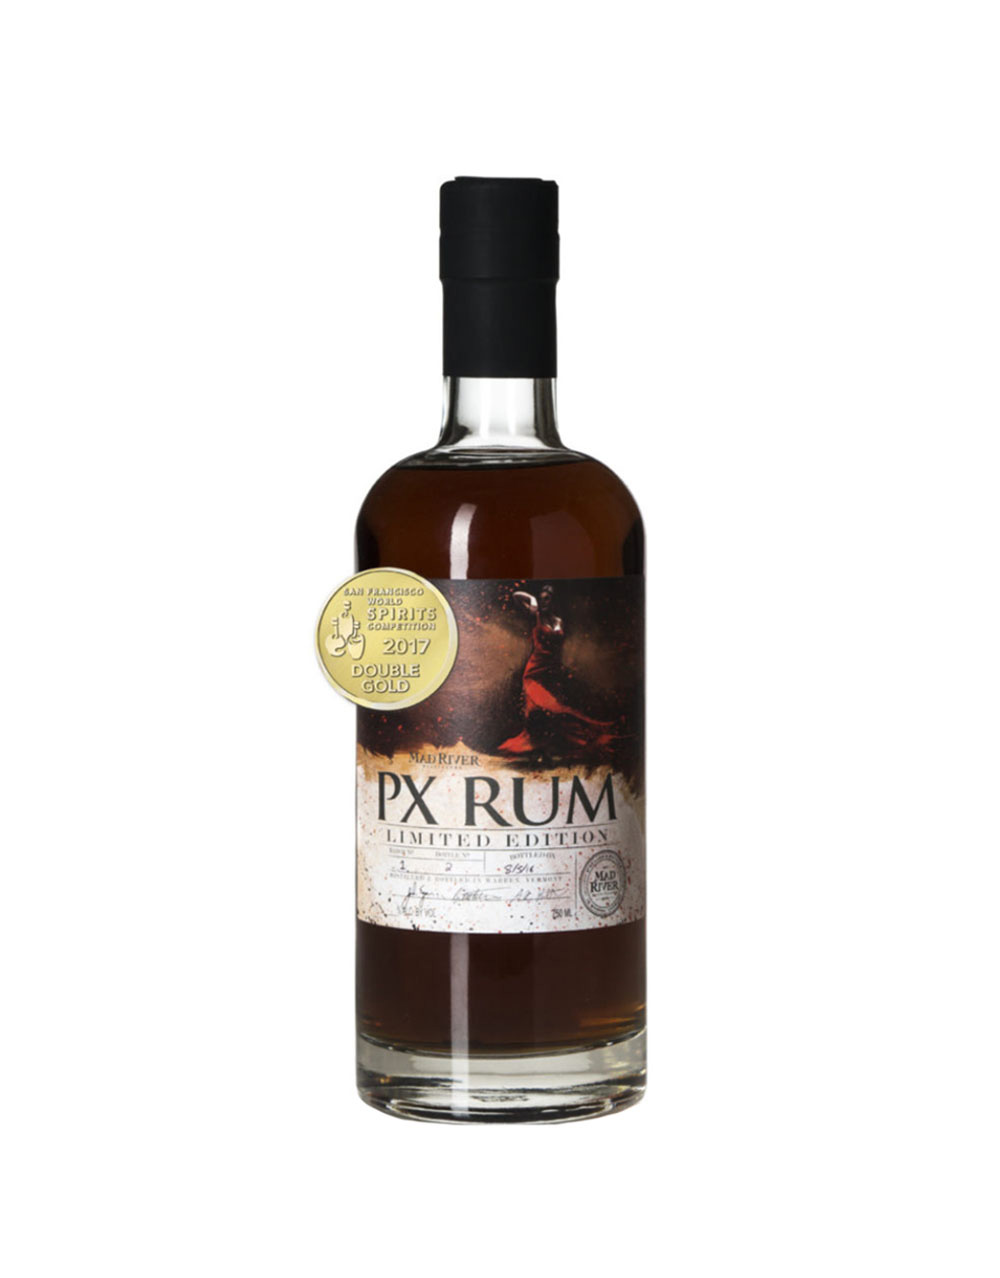 Cruzan Passion Fruit Rum